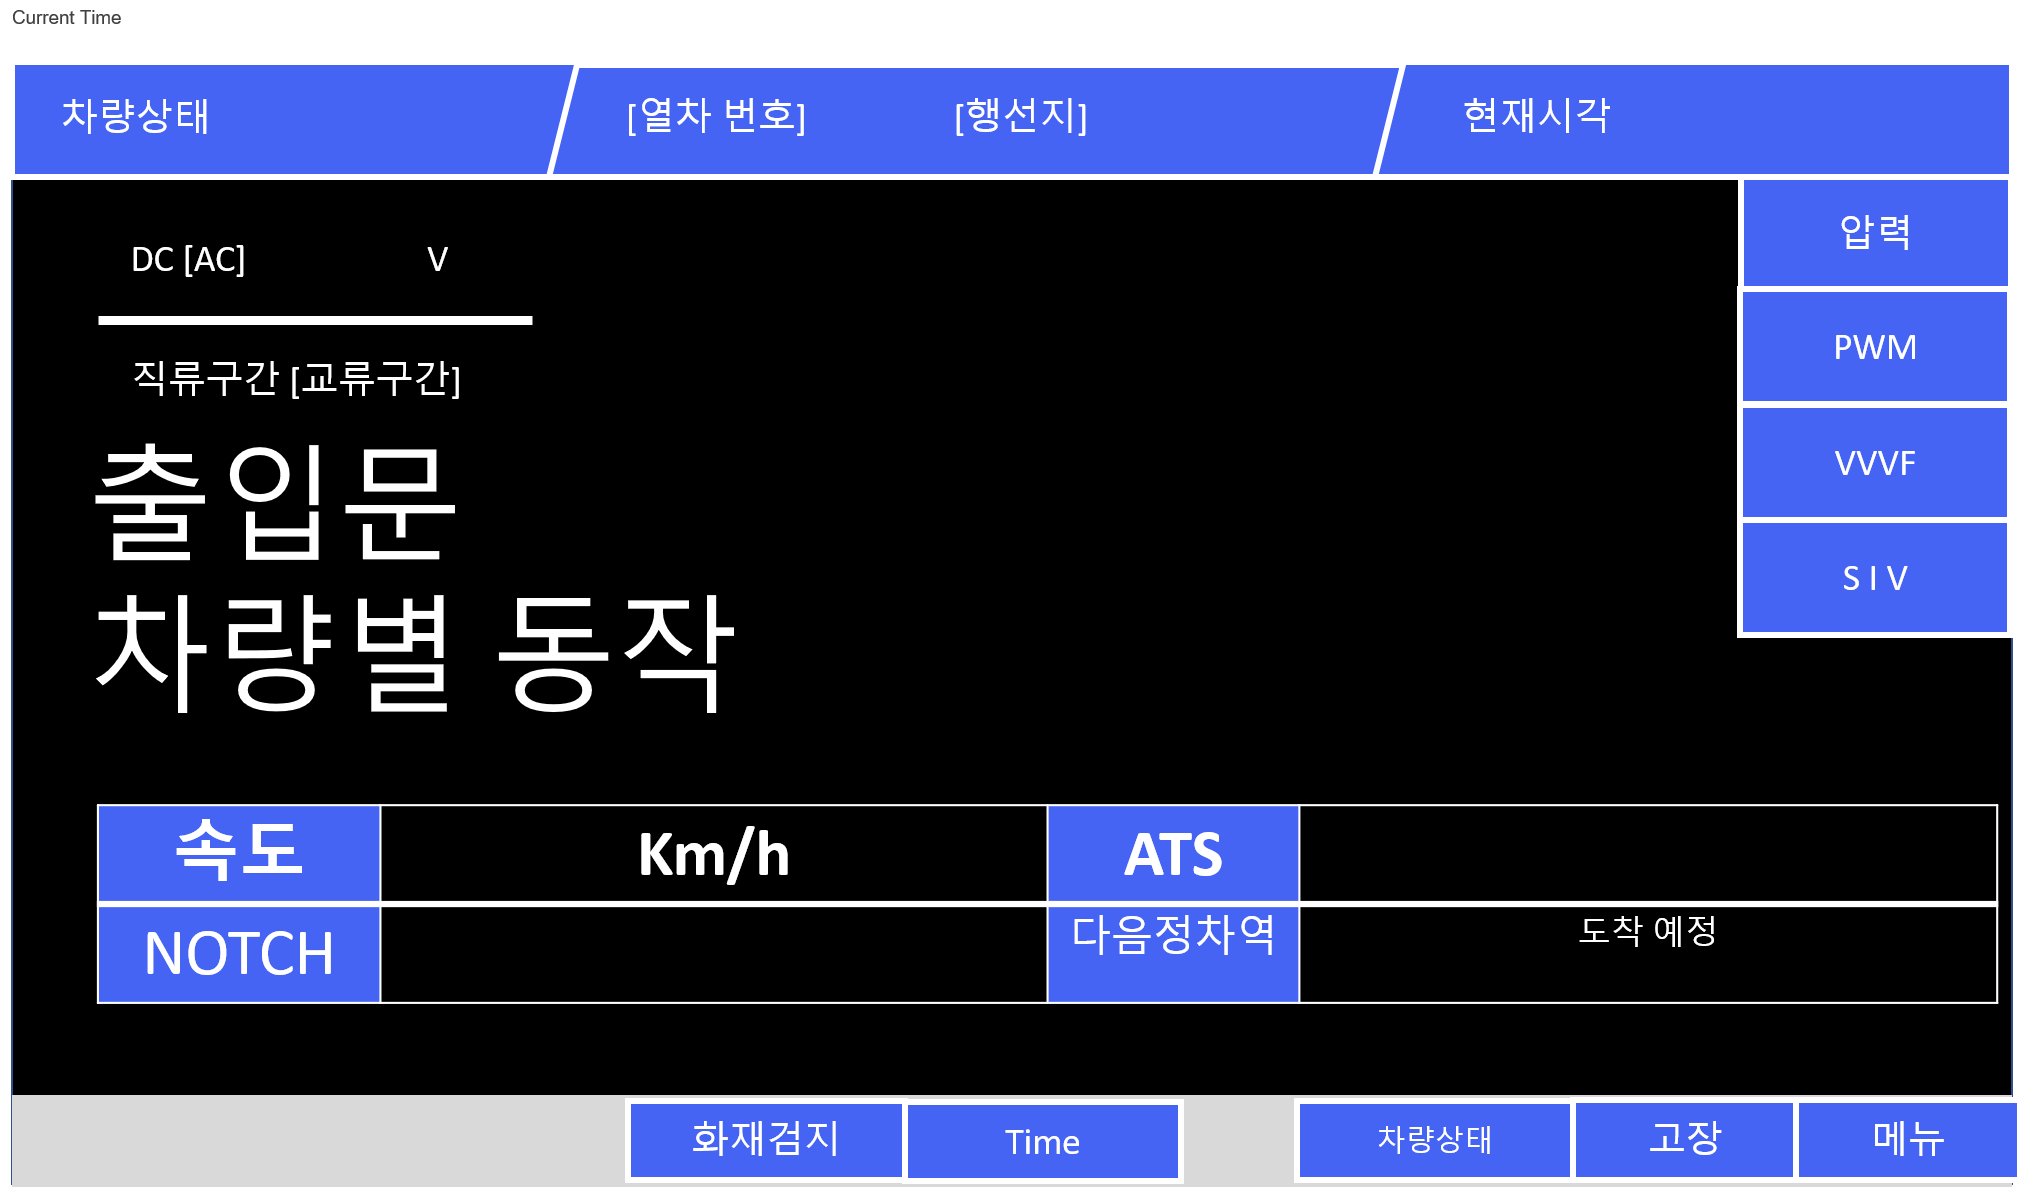 Hmmsim Metro - How to Use Korean Language in Hmmsim Metro